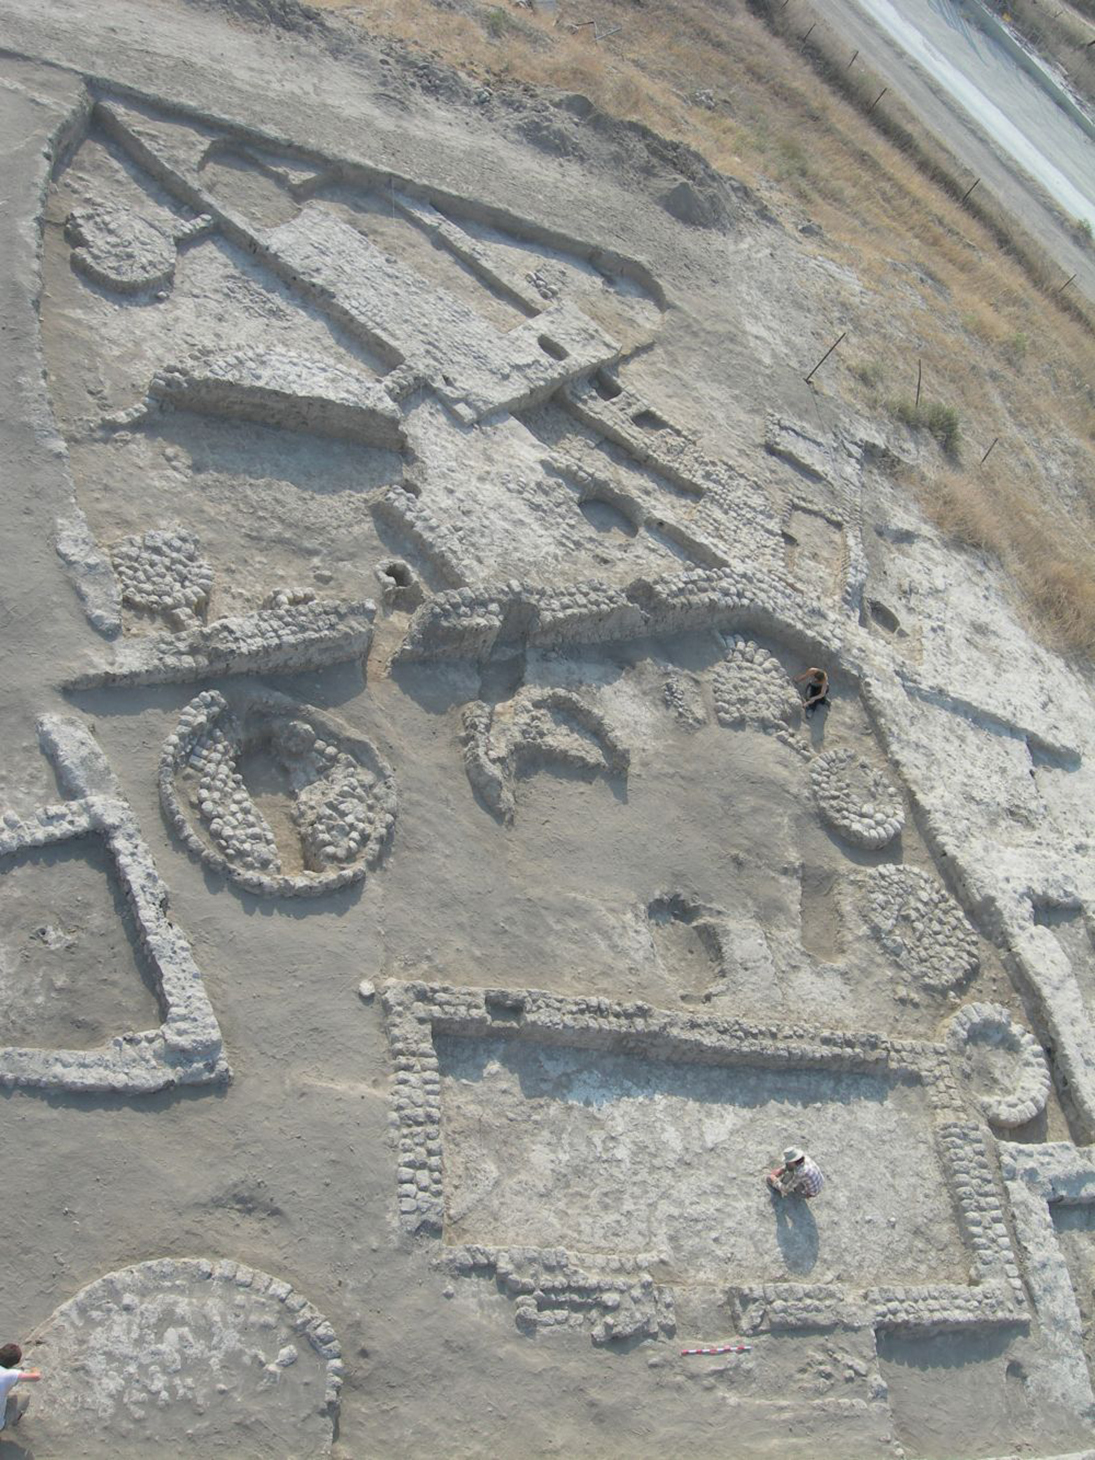 שרידי מבנים וממגורות באתר הכלכוליתי תל צף שמדרום לבית שאן (קרדיט צילום: פרופ' יוסף גרפינקל)